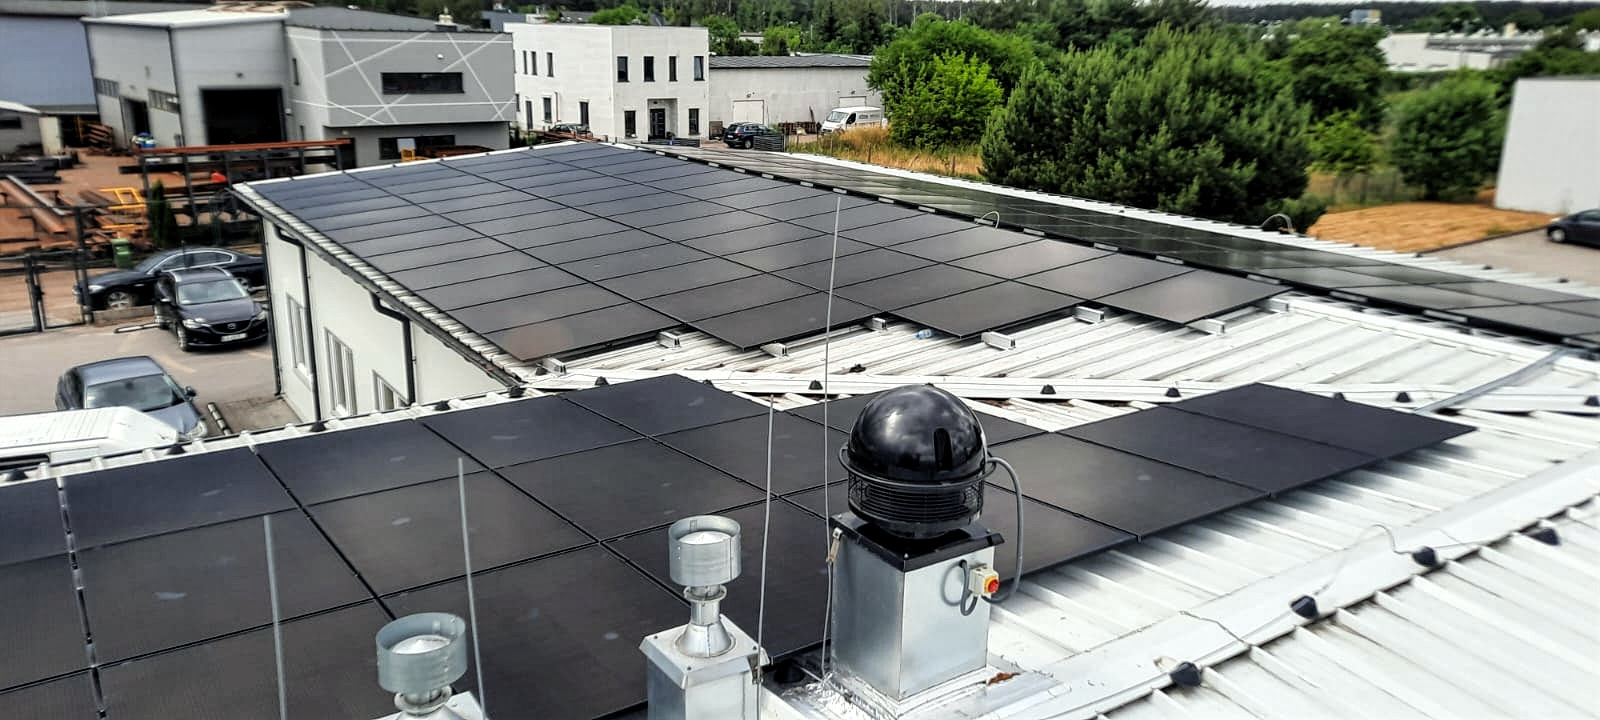 Zdjęcie widoku z góry systemu fotowoltaicznego zainstalowanego przez SOLAND na dachu firmy w Płocku, ilustrujące profesjonalizm i precyzję montażu, oraz zaangażowanie w dostarczanie zrównoważonych rozwiązań energetycznych dla biznesu.